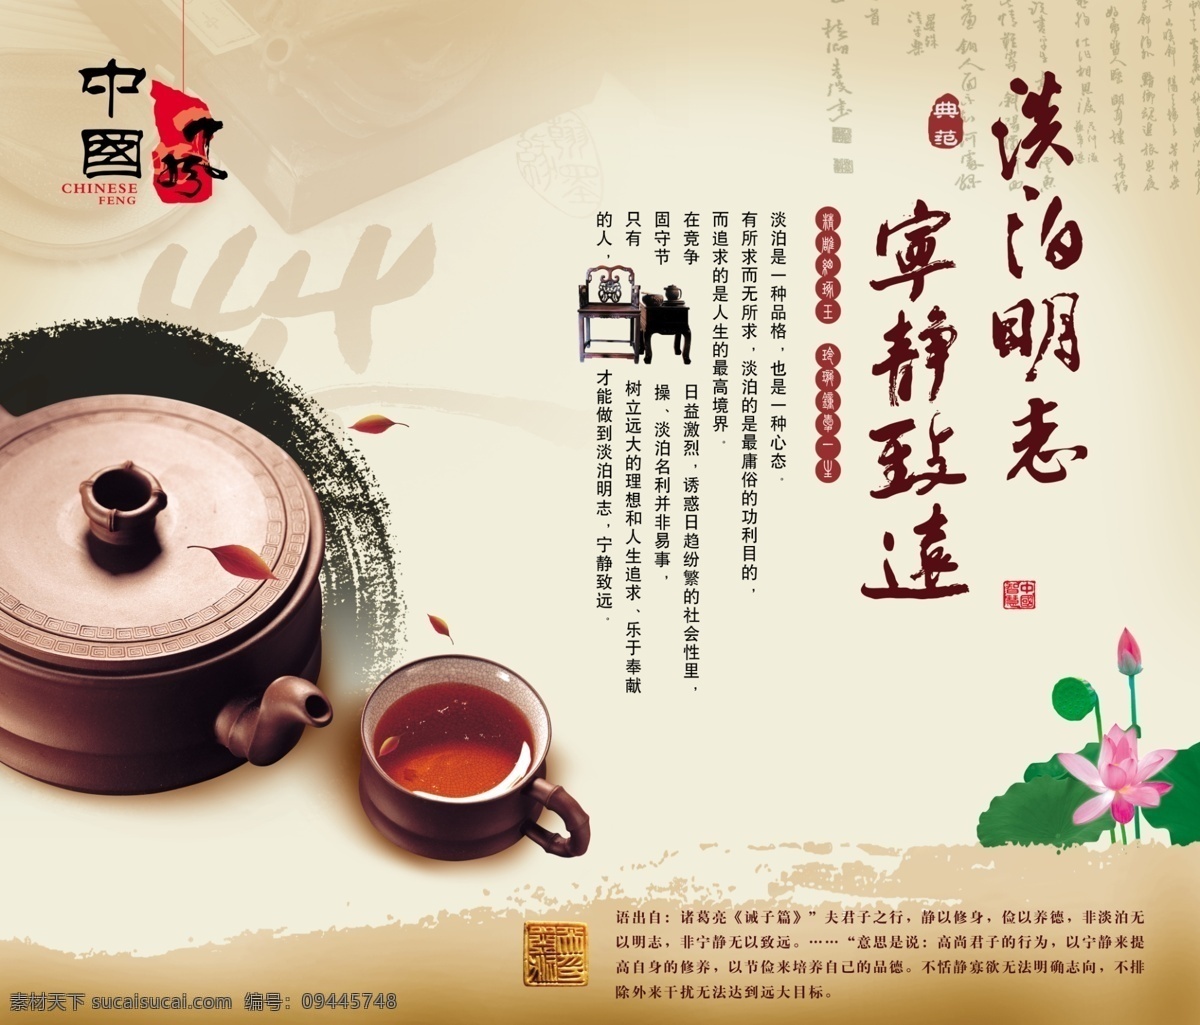 中国 风 茶具 海报 海报素材 海报模板 中国风 水墨 莲花 广告设计模板 psd素材 白色